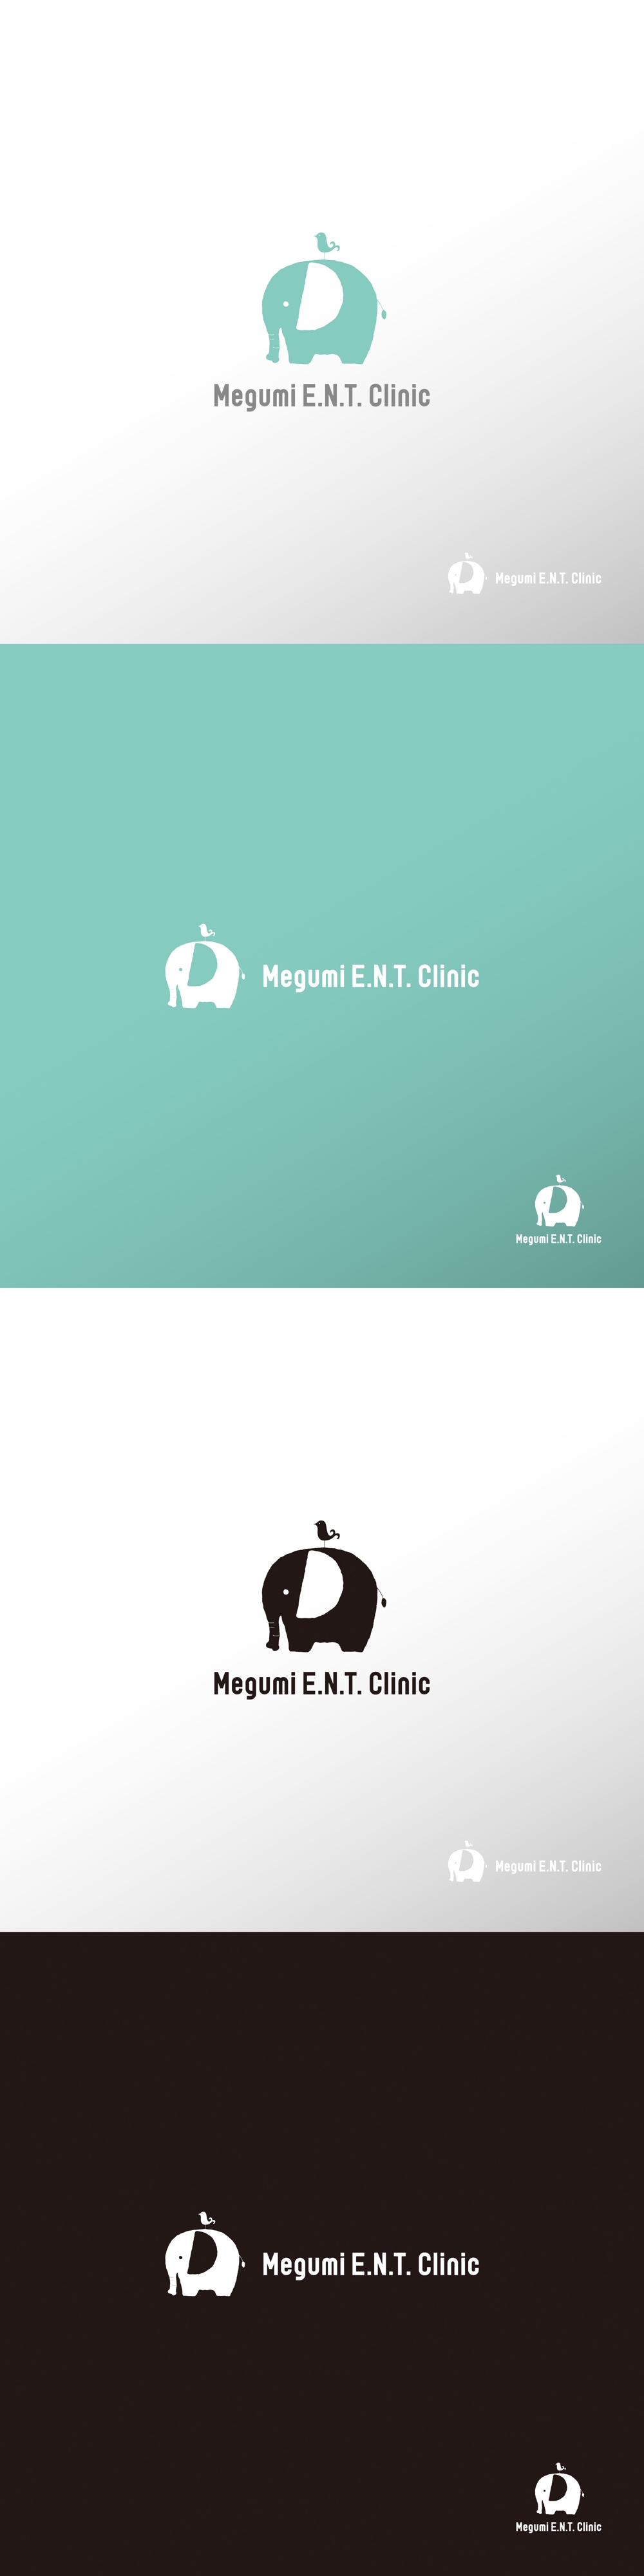 クリニック_Megumi E.N.T. Clinic_ロゴC1.jpg